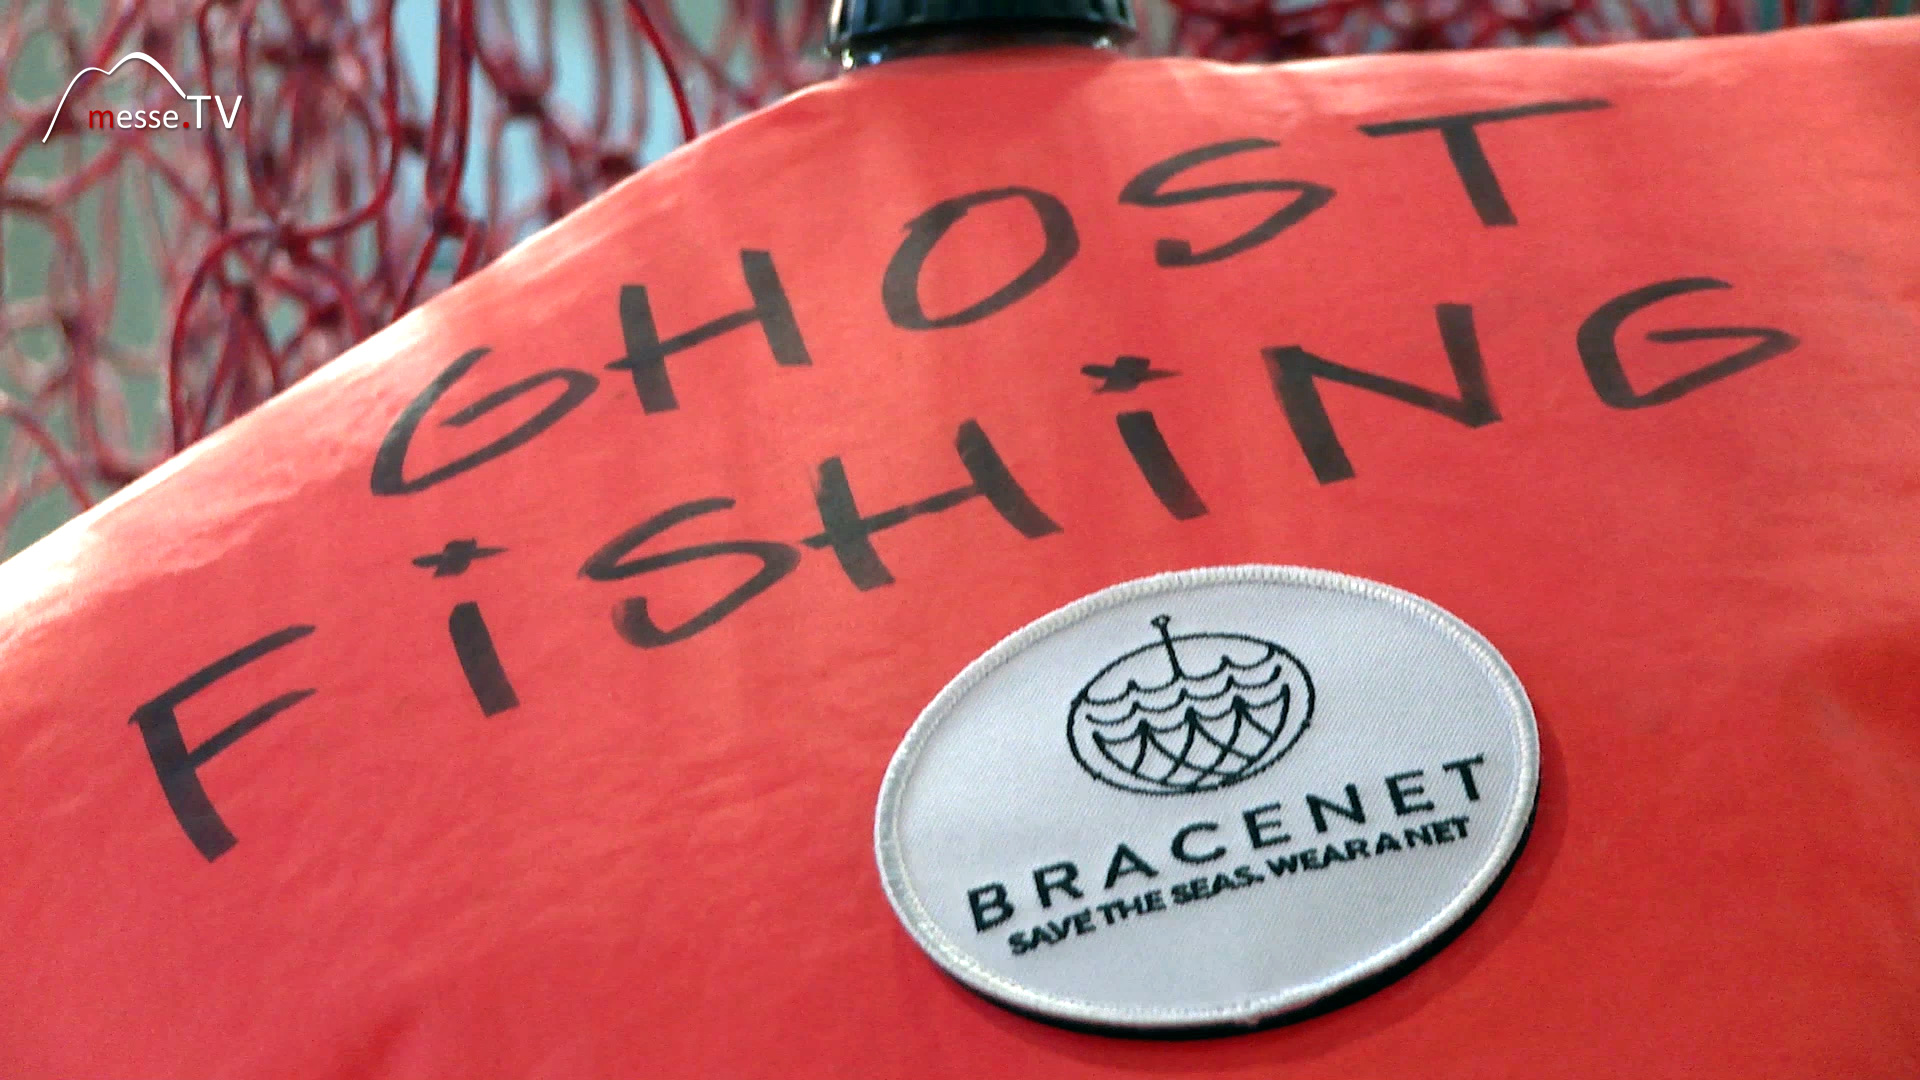 Ghost Fishing healthy seas Bracenet boot 2020 Duesseldorf